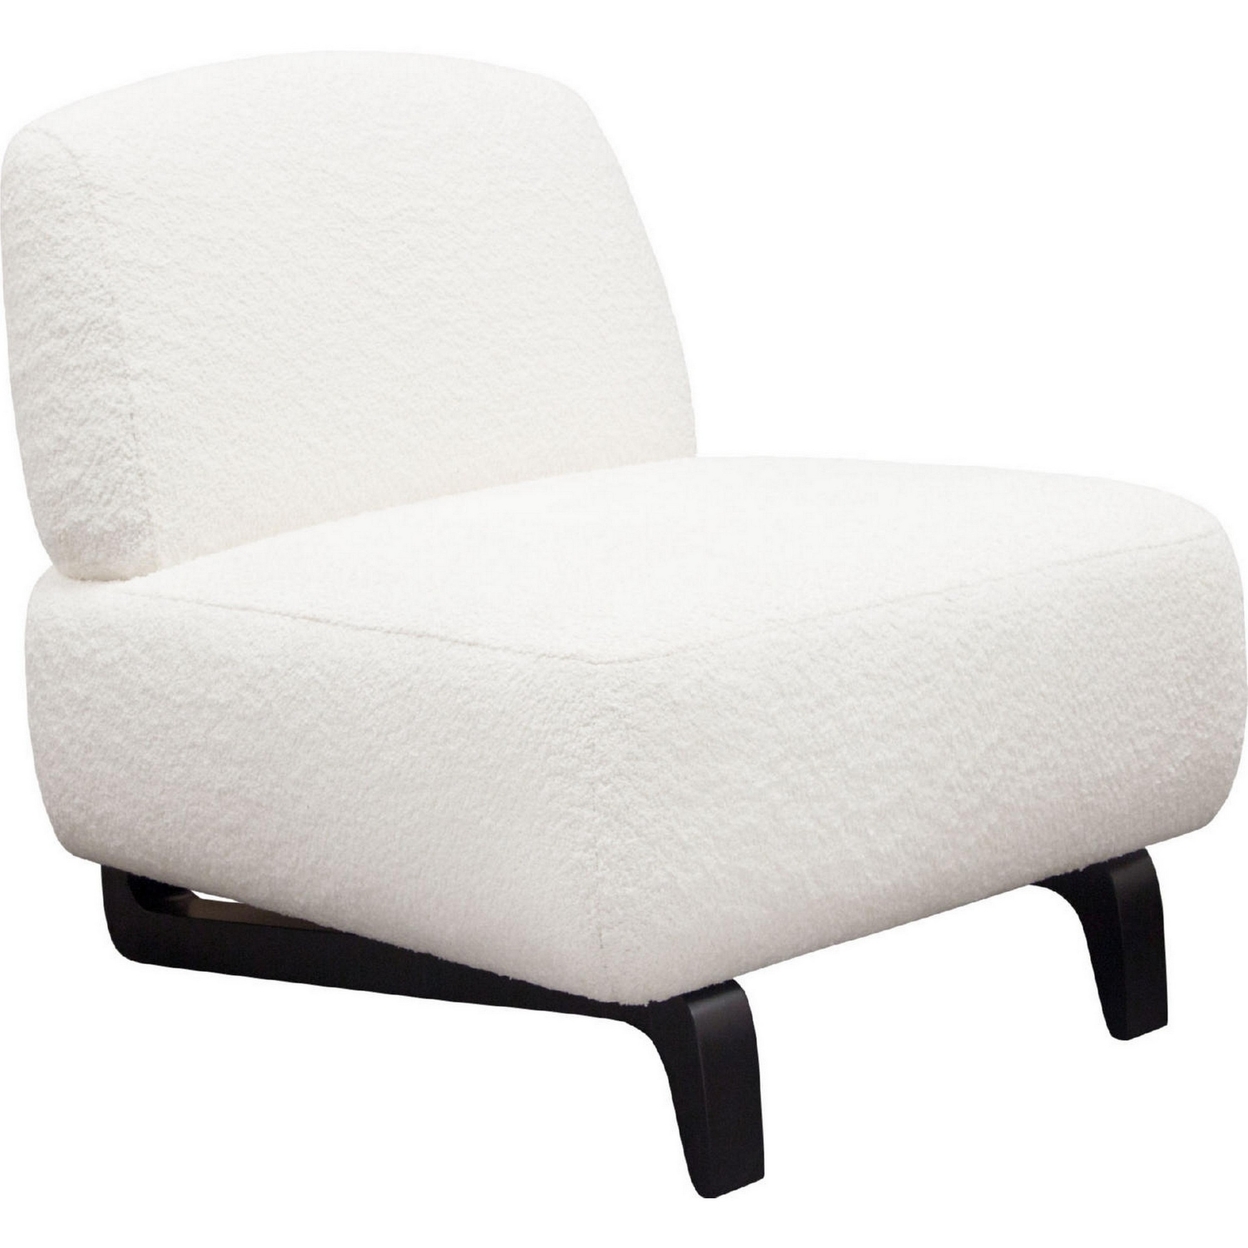 Ikka 30 Inch Padded Armless Chair, Crisp White Faux Sheepskin Upholstery- Saltoro Sherpi